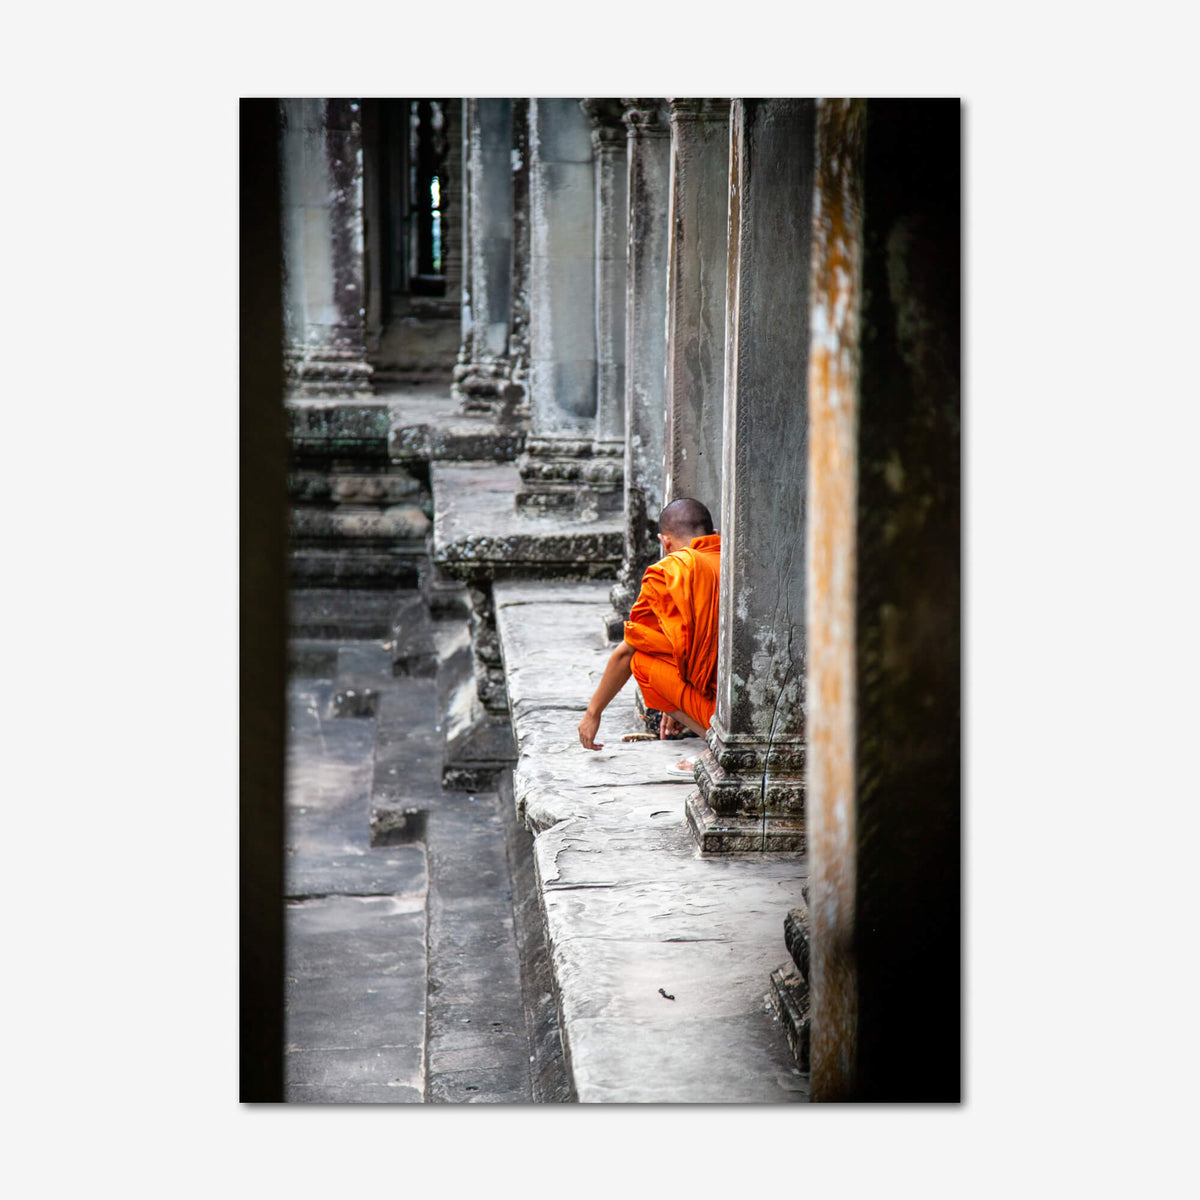 Monk in Solitude